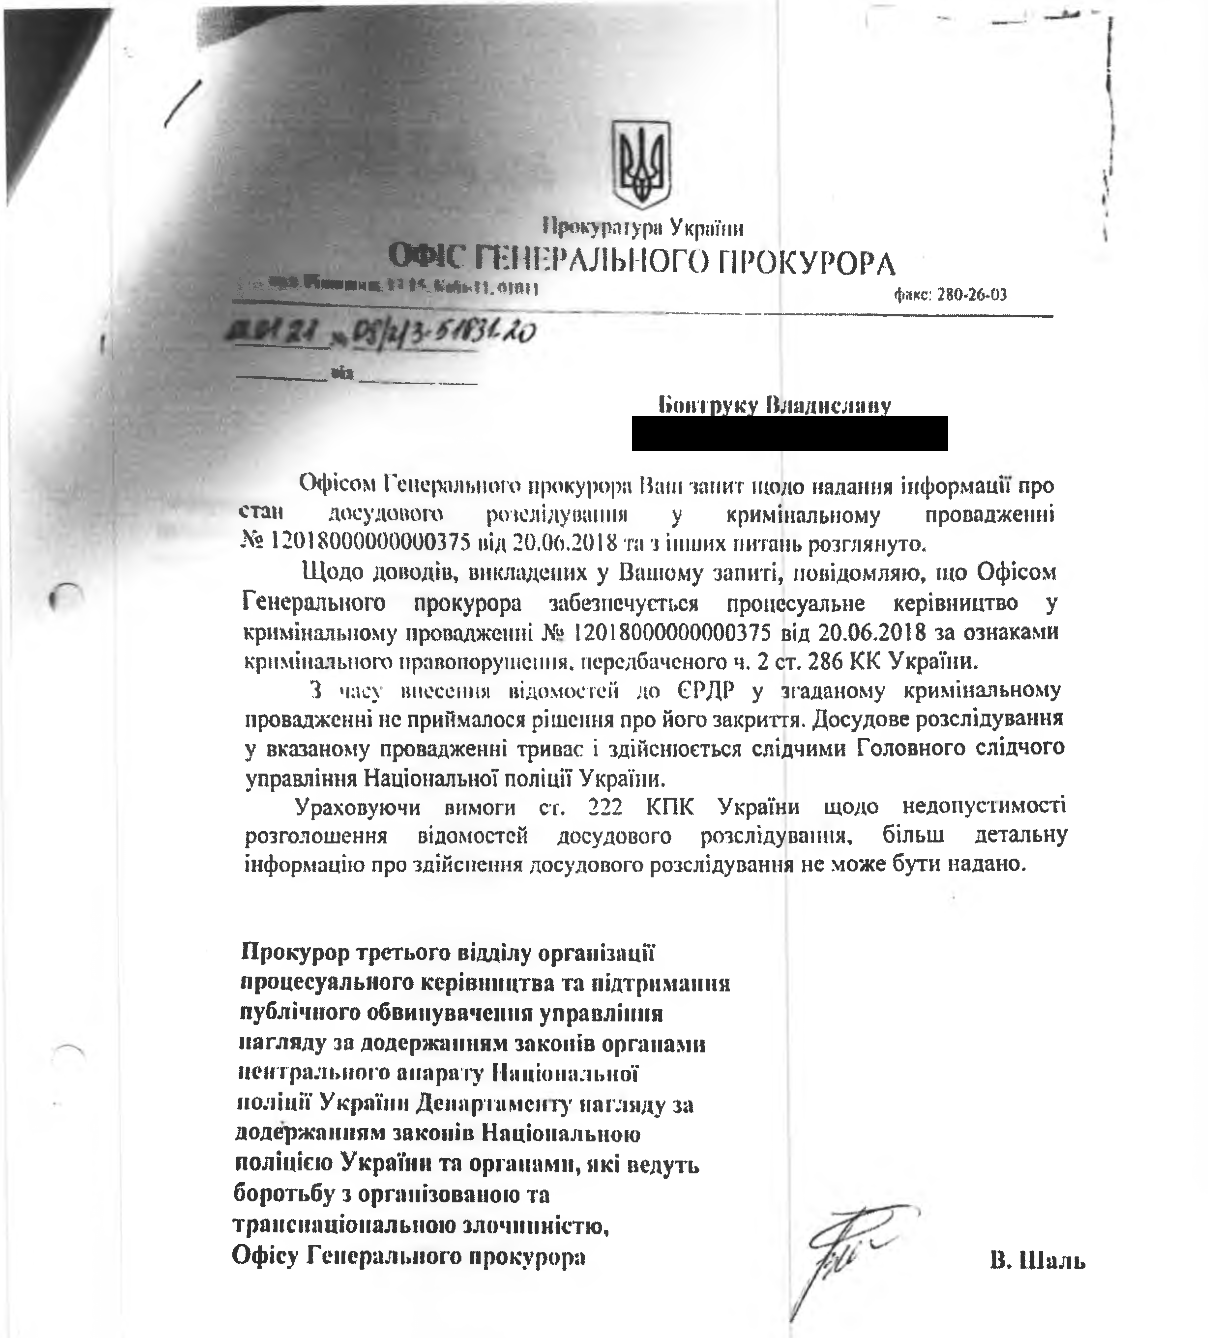 Офис генерального прокурора Украины обеспечивает процессуальное руководство в уголовном производстве